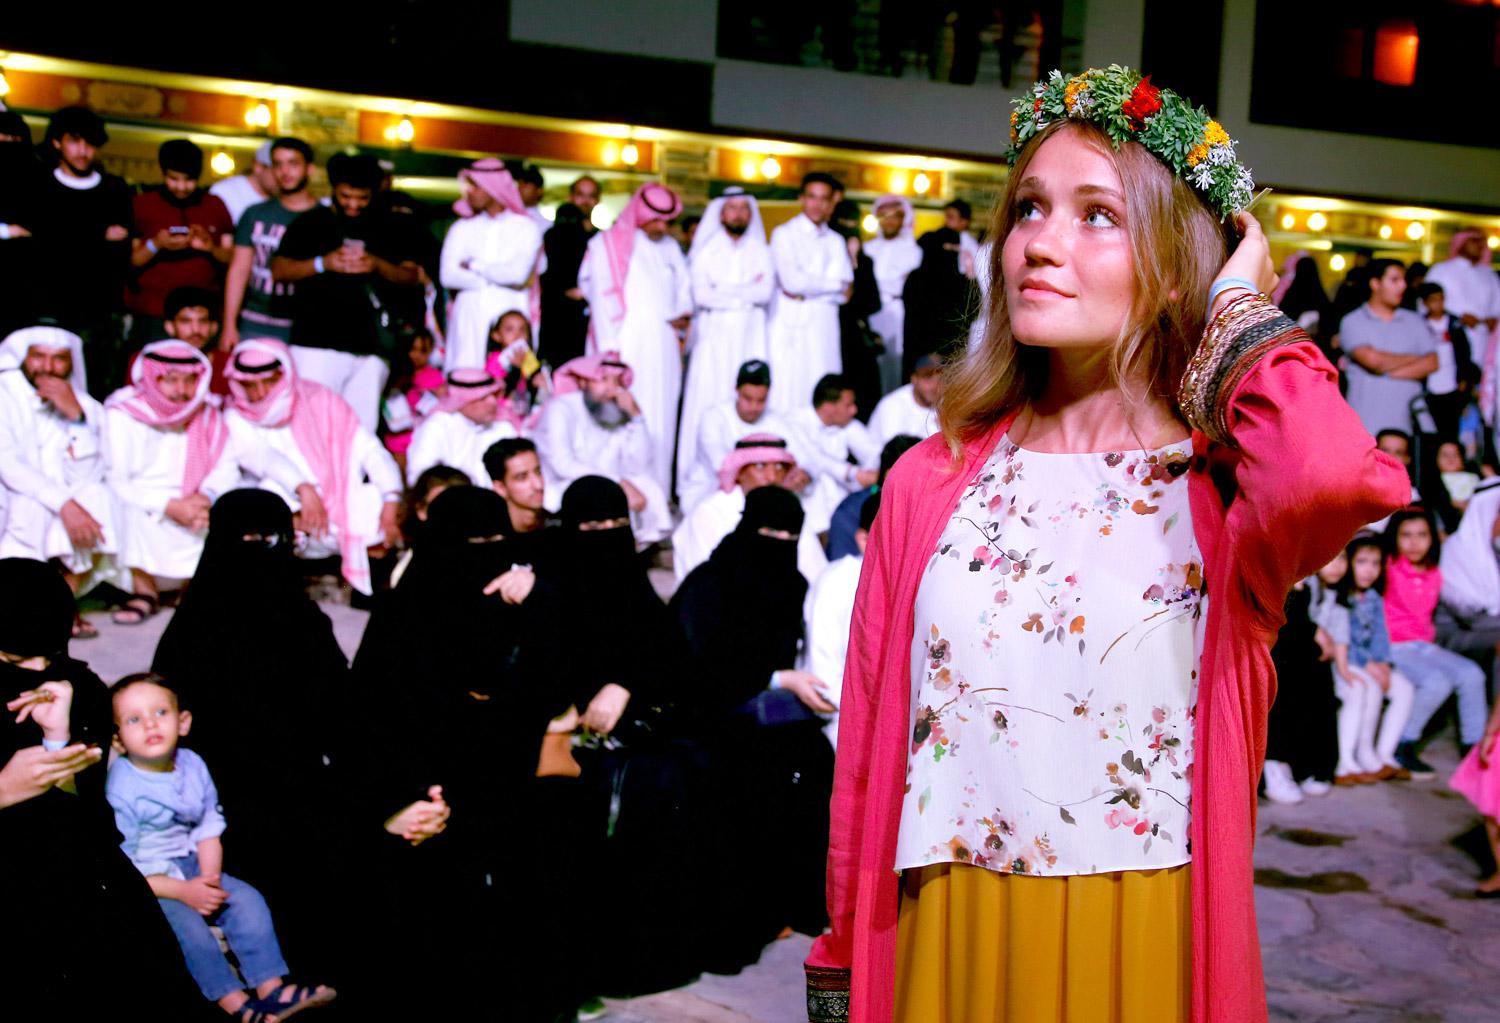 السعوديون يرحبون بانفتاح بلادهم على ثقافات أخرى